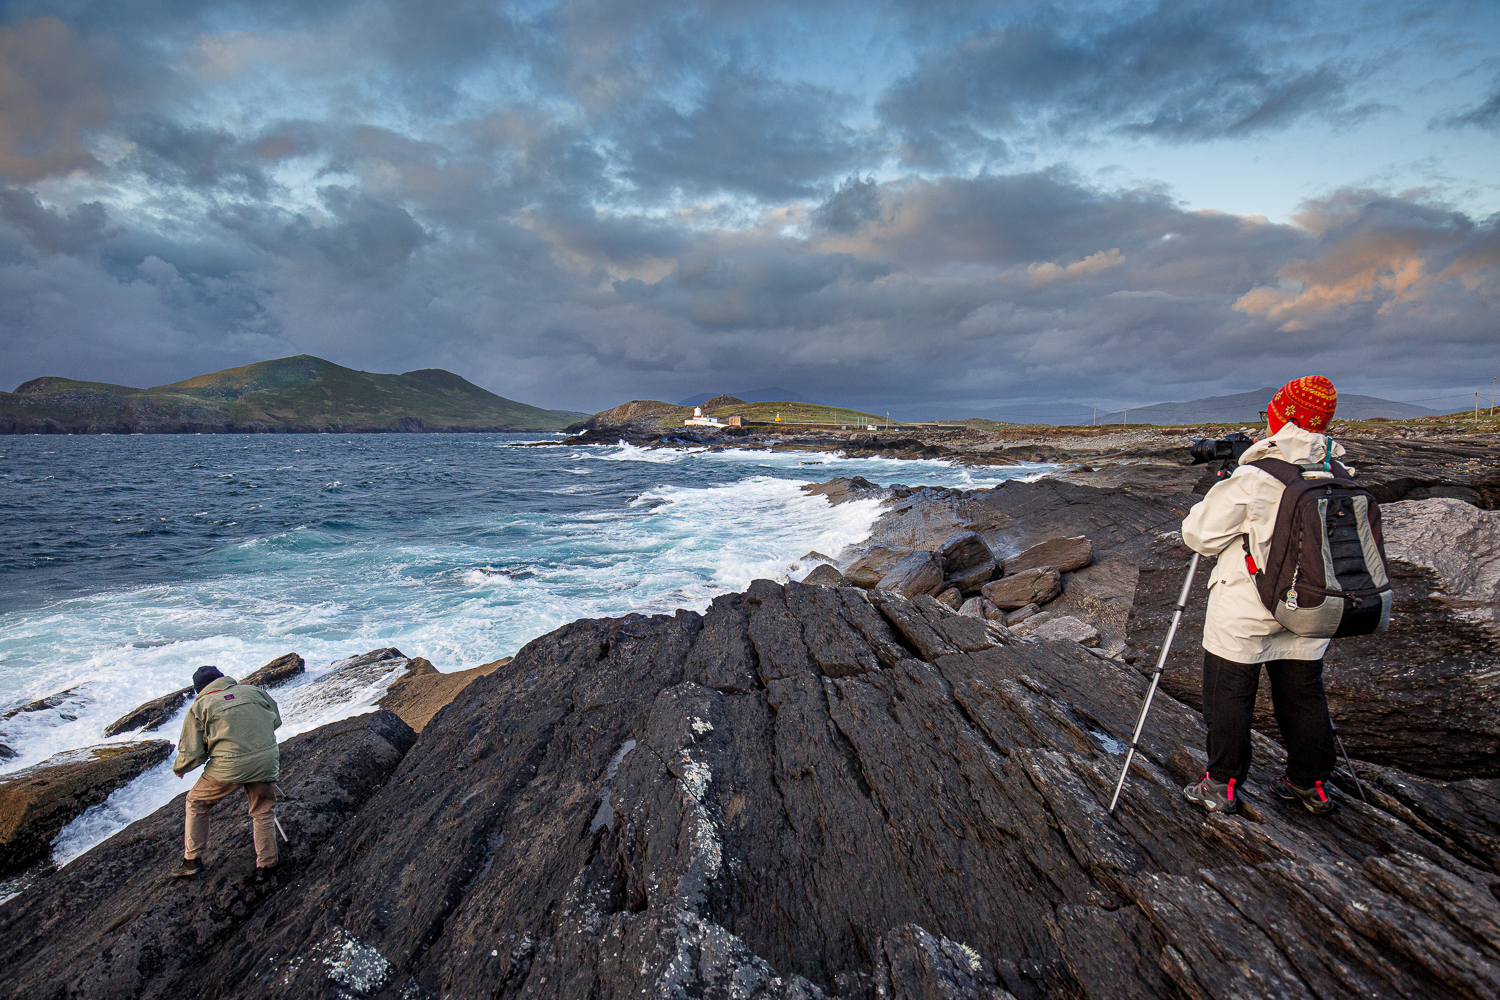 séance photo sur le phare de Valencia Island, stage photo en Irlande